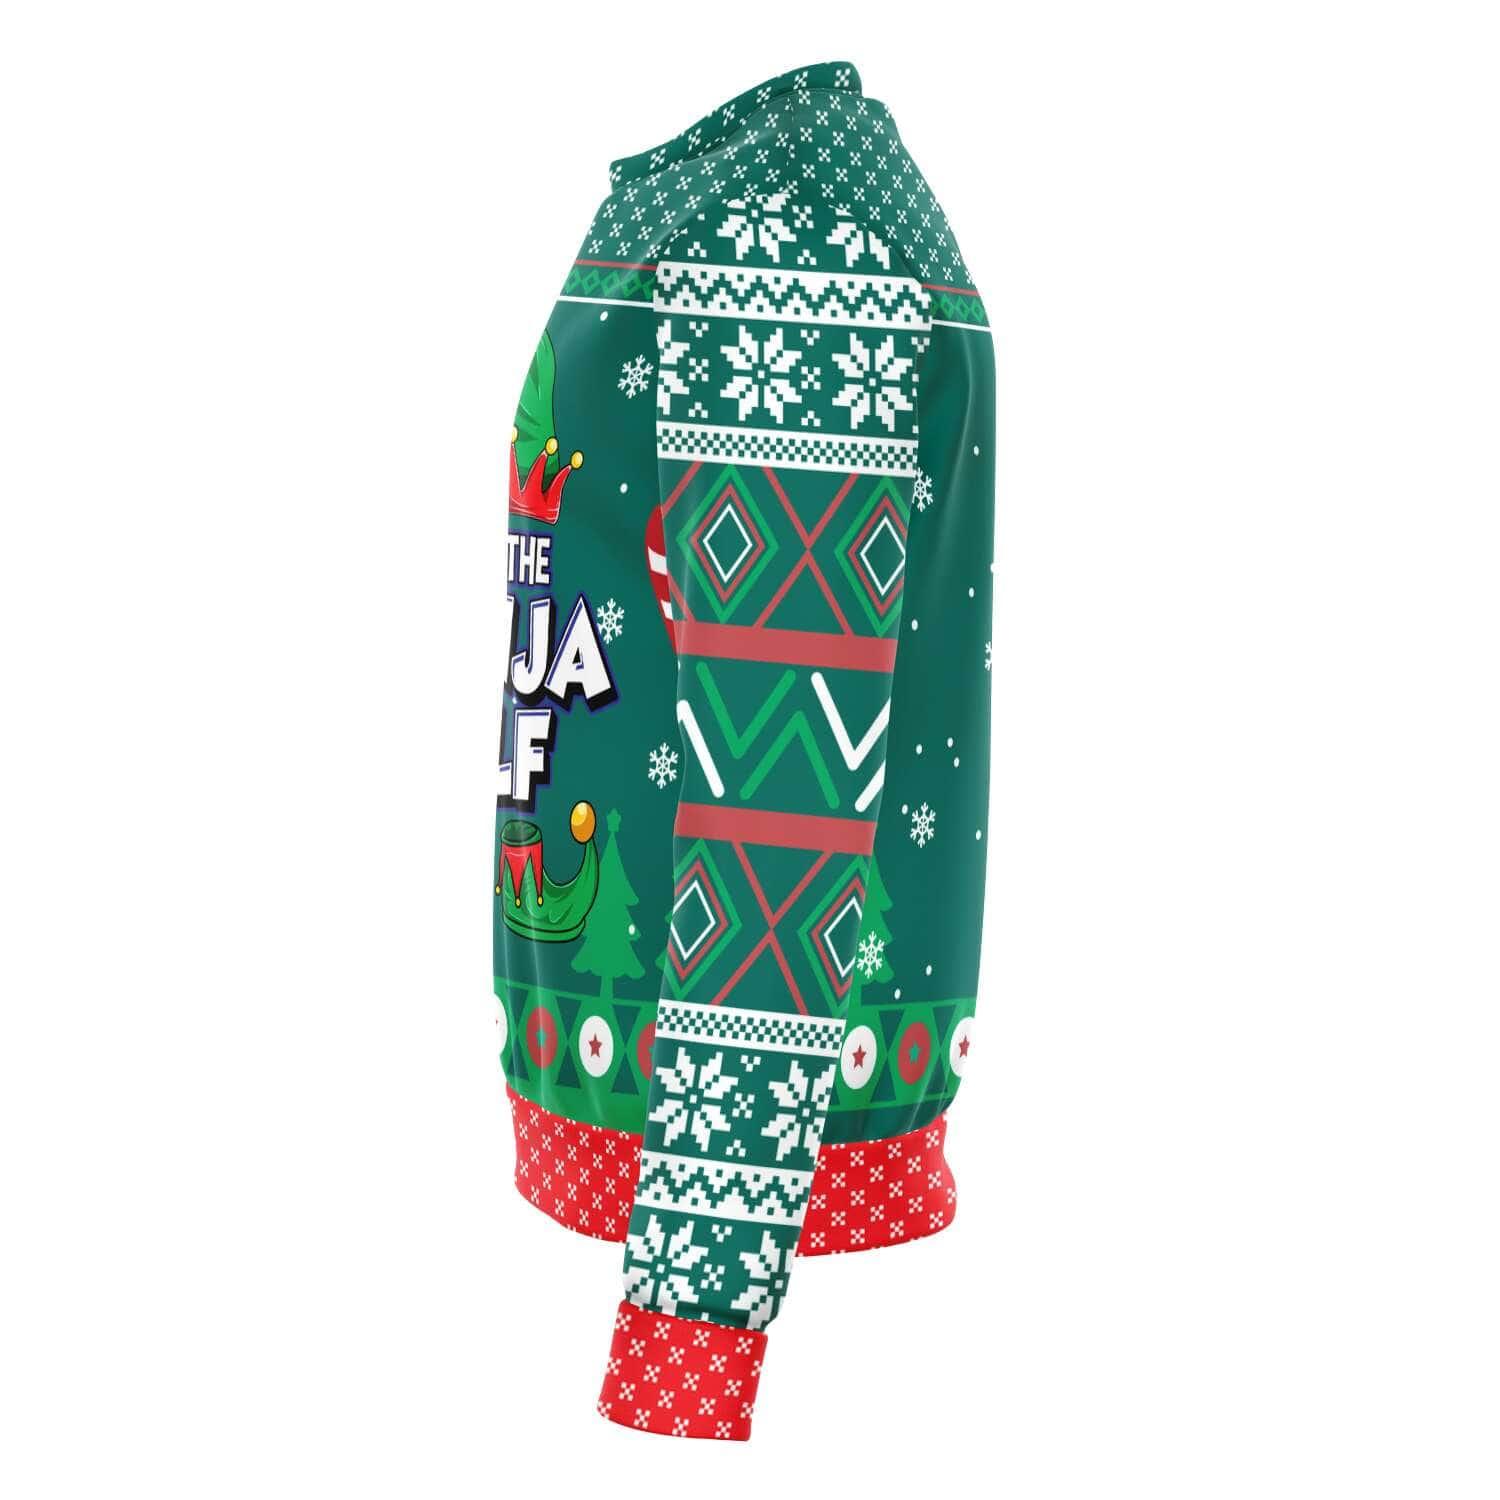  Christmas Sweatshirt- TopKoaLaTee